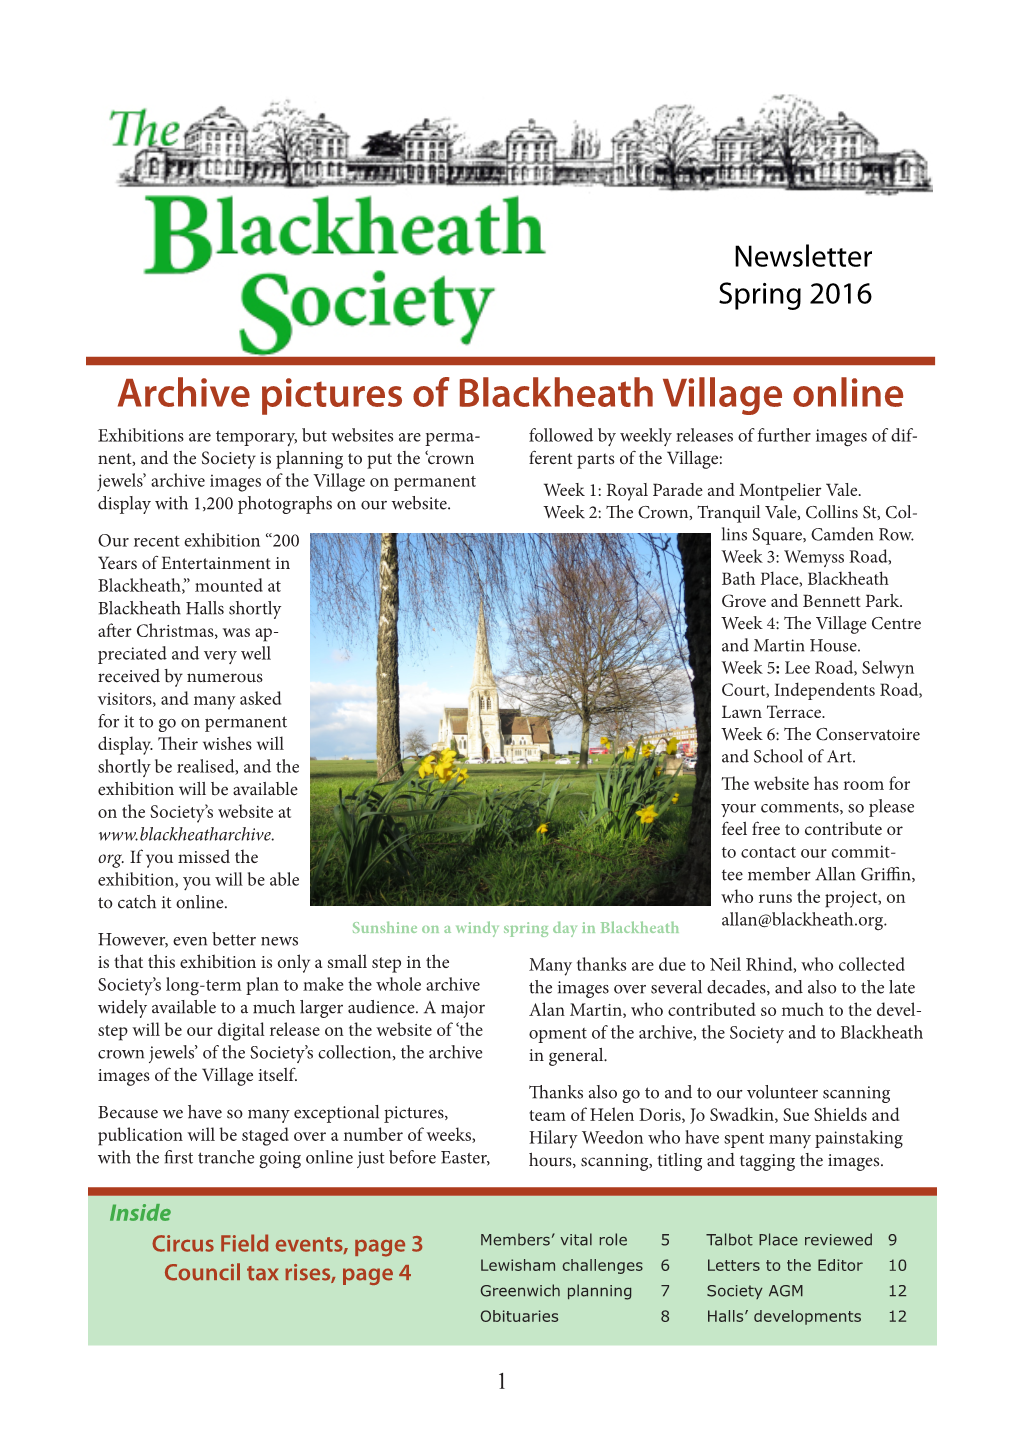 Archive Pictures of Blackheath Village Online